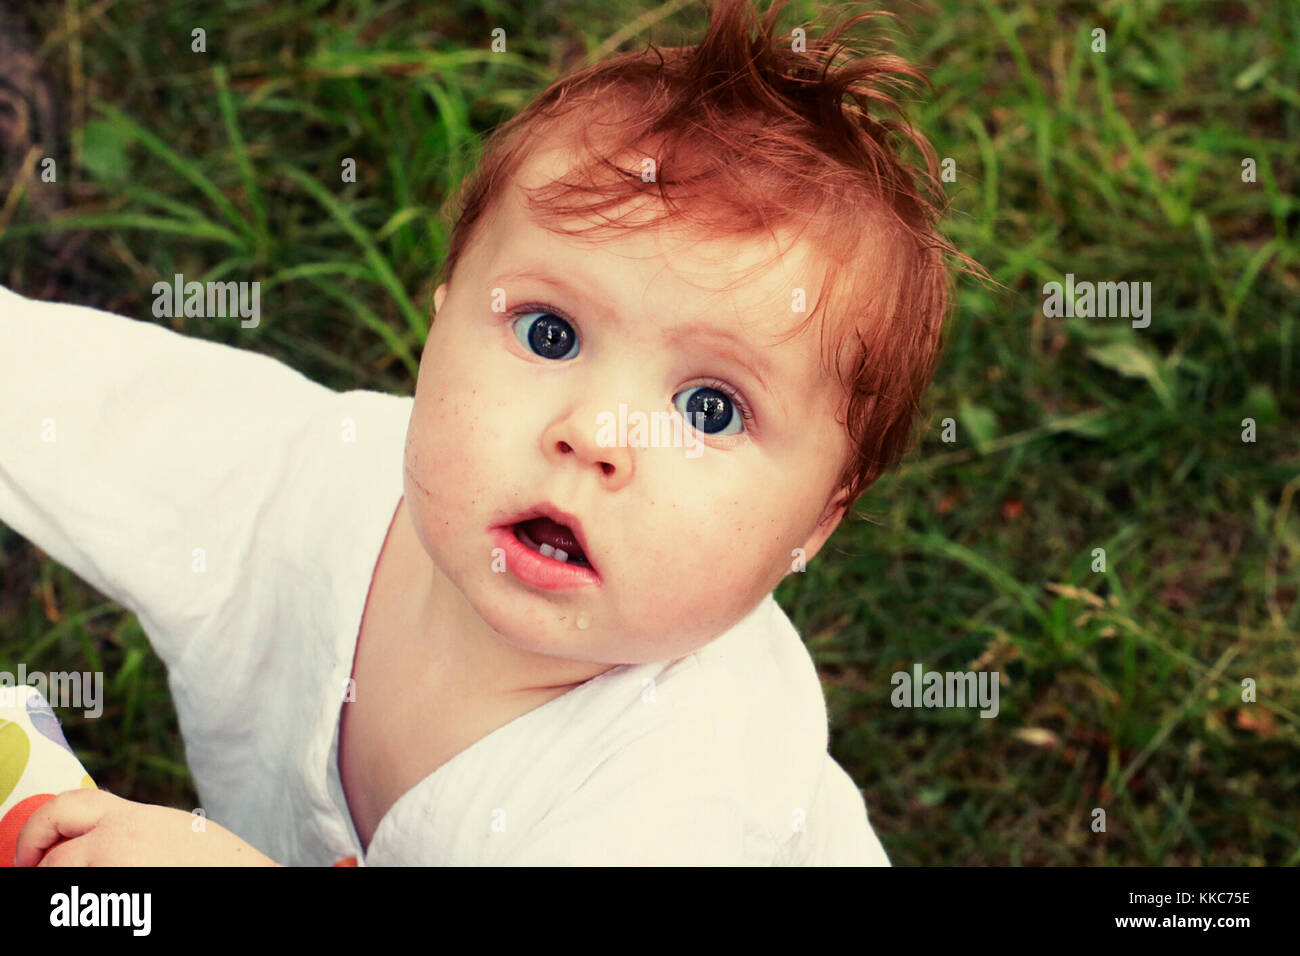 Portrait de bébé tête rouge surpris avec de grands yeux bleus et bouche ouverte habillé en chemise blanche, jusqu'à la sur fond vert naturel avec de l'herbe. Banque D'Images